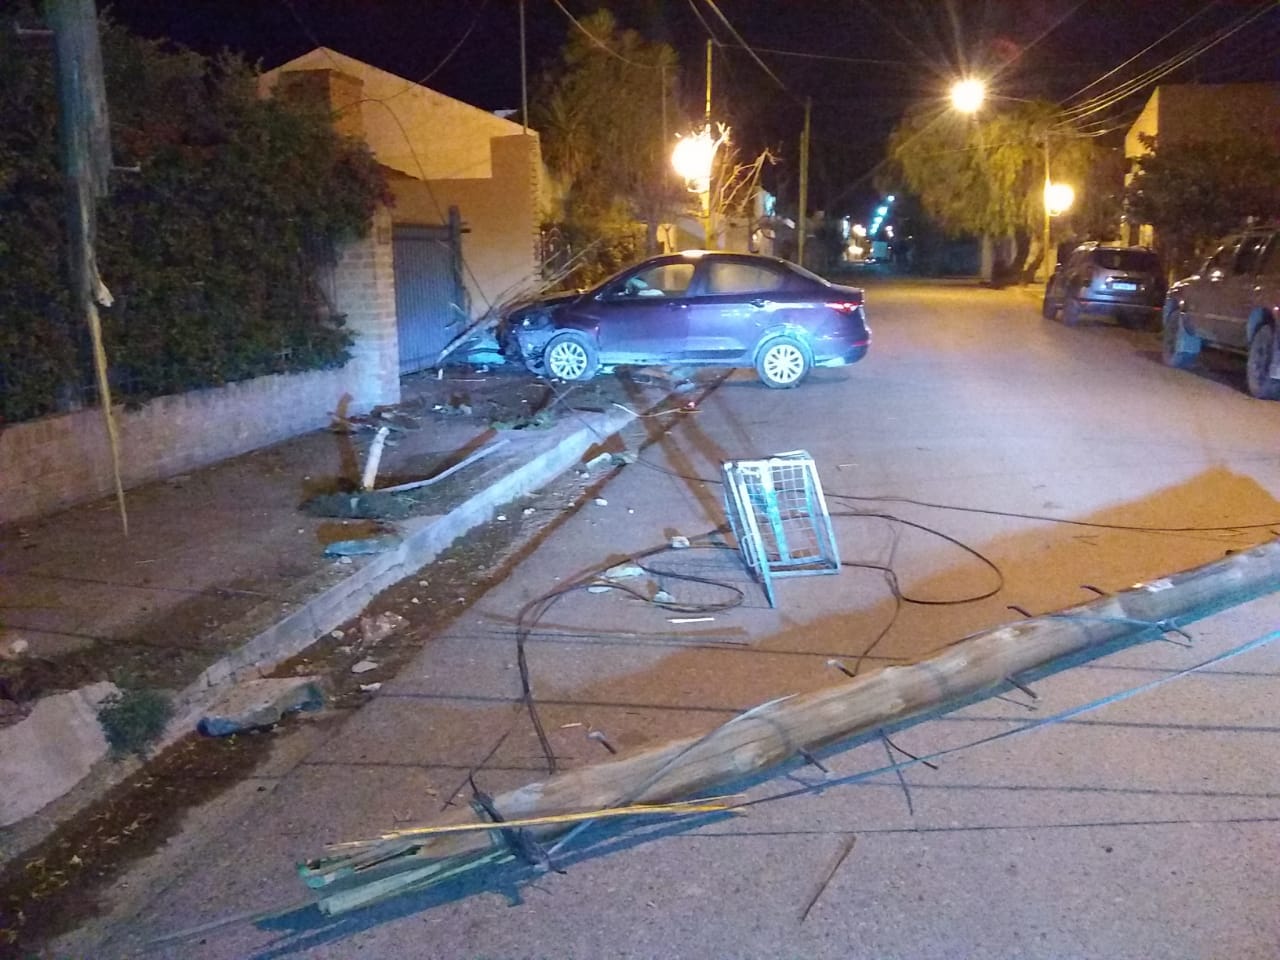 Luego de derribar el poste y chocar contra la vivienda, el conductor abandonó el auto. (Foto gentileza)